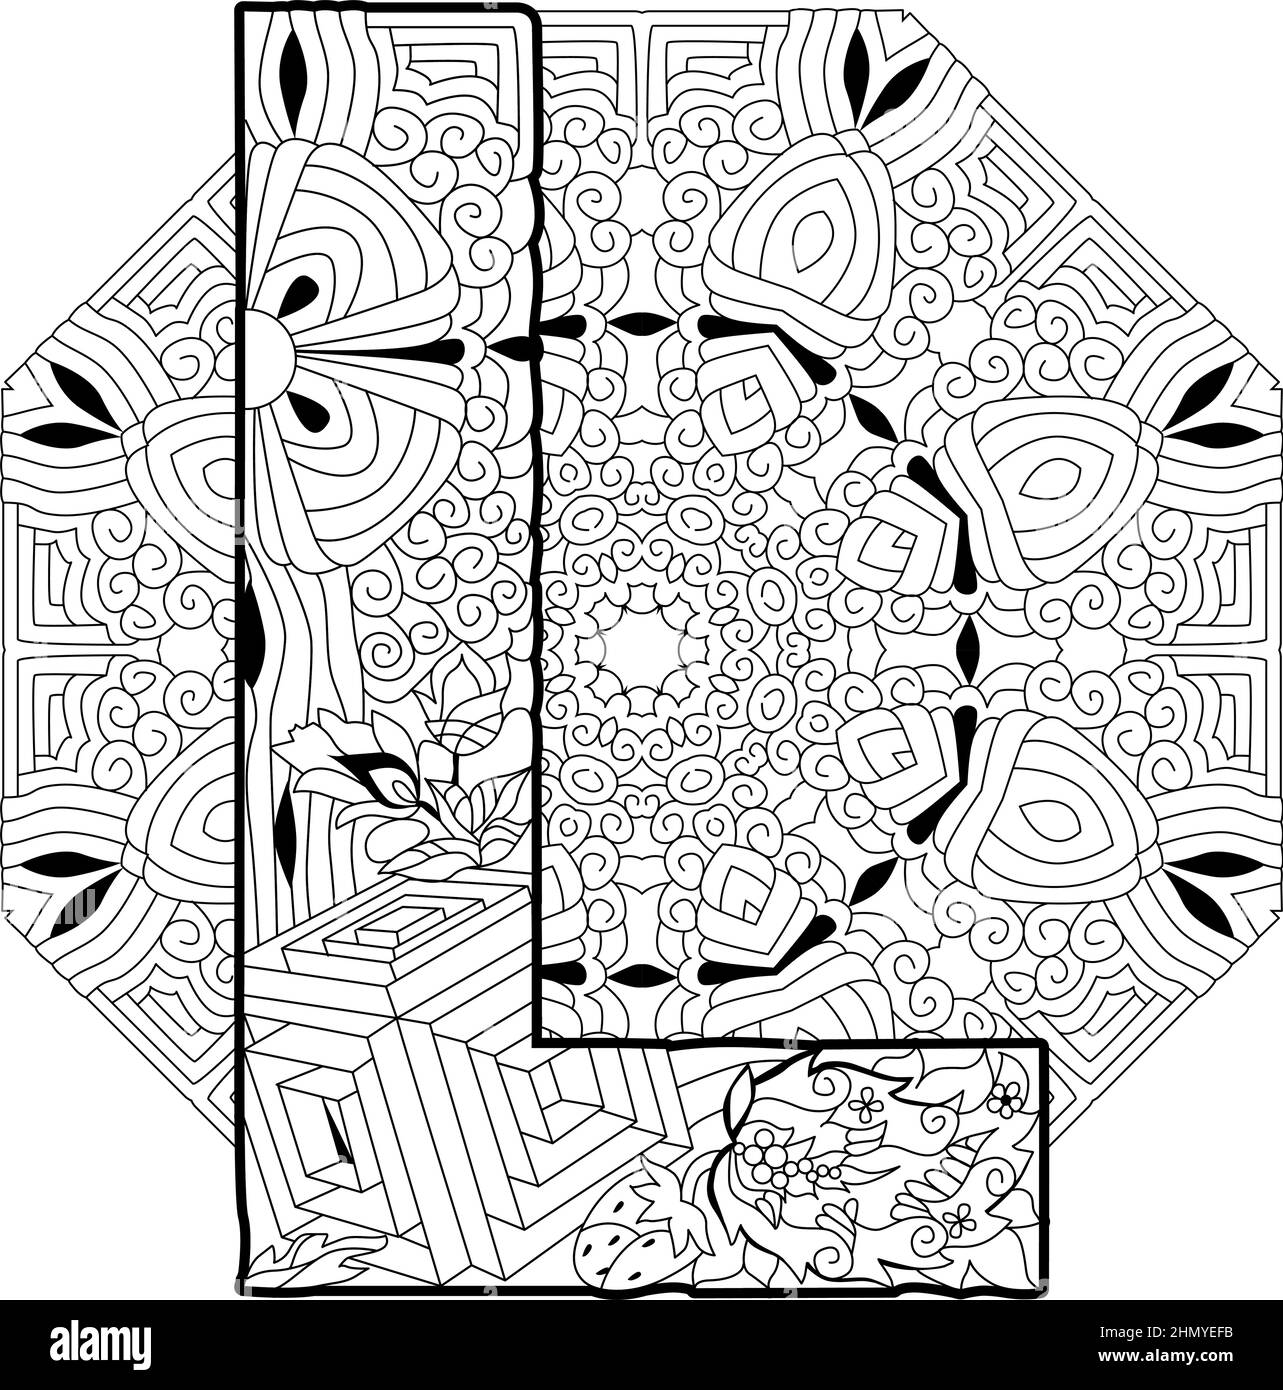 Zentangle alphabet stylisé - lettre L sur le mandala pour la coloration. Illustration vectorielle. Modèle ethnique Illustration de Vecteur